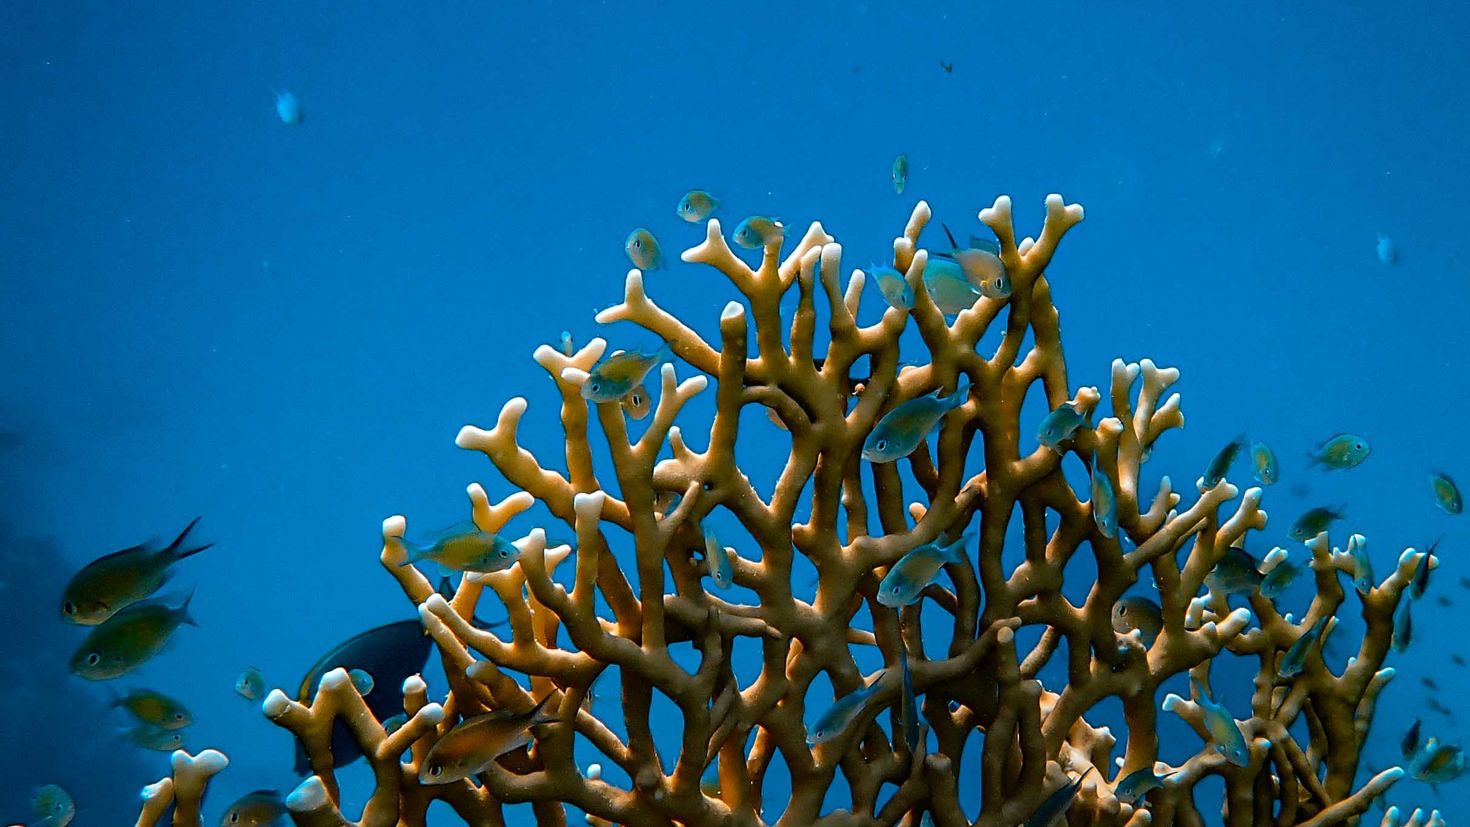 Coral video. Кораллы это животные. Кораллы в воде. Кораллы фон. Обои на рабочий стол кораллы.